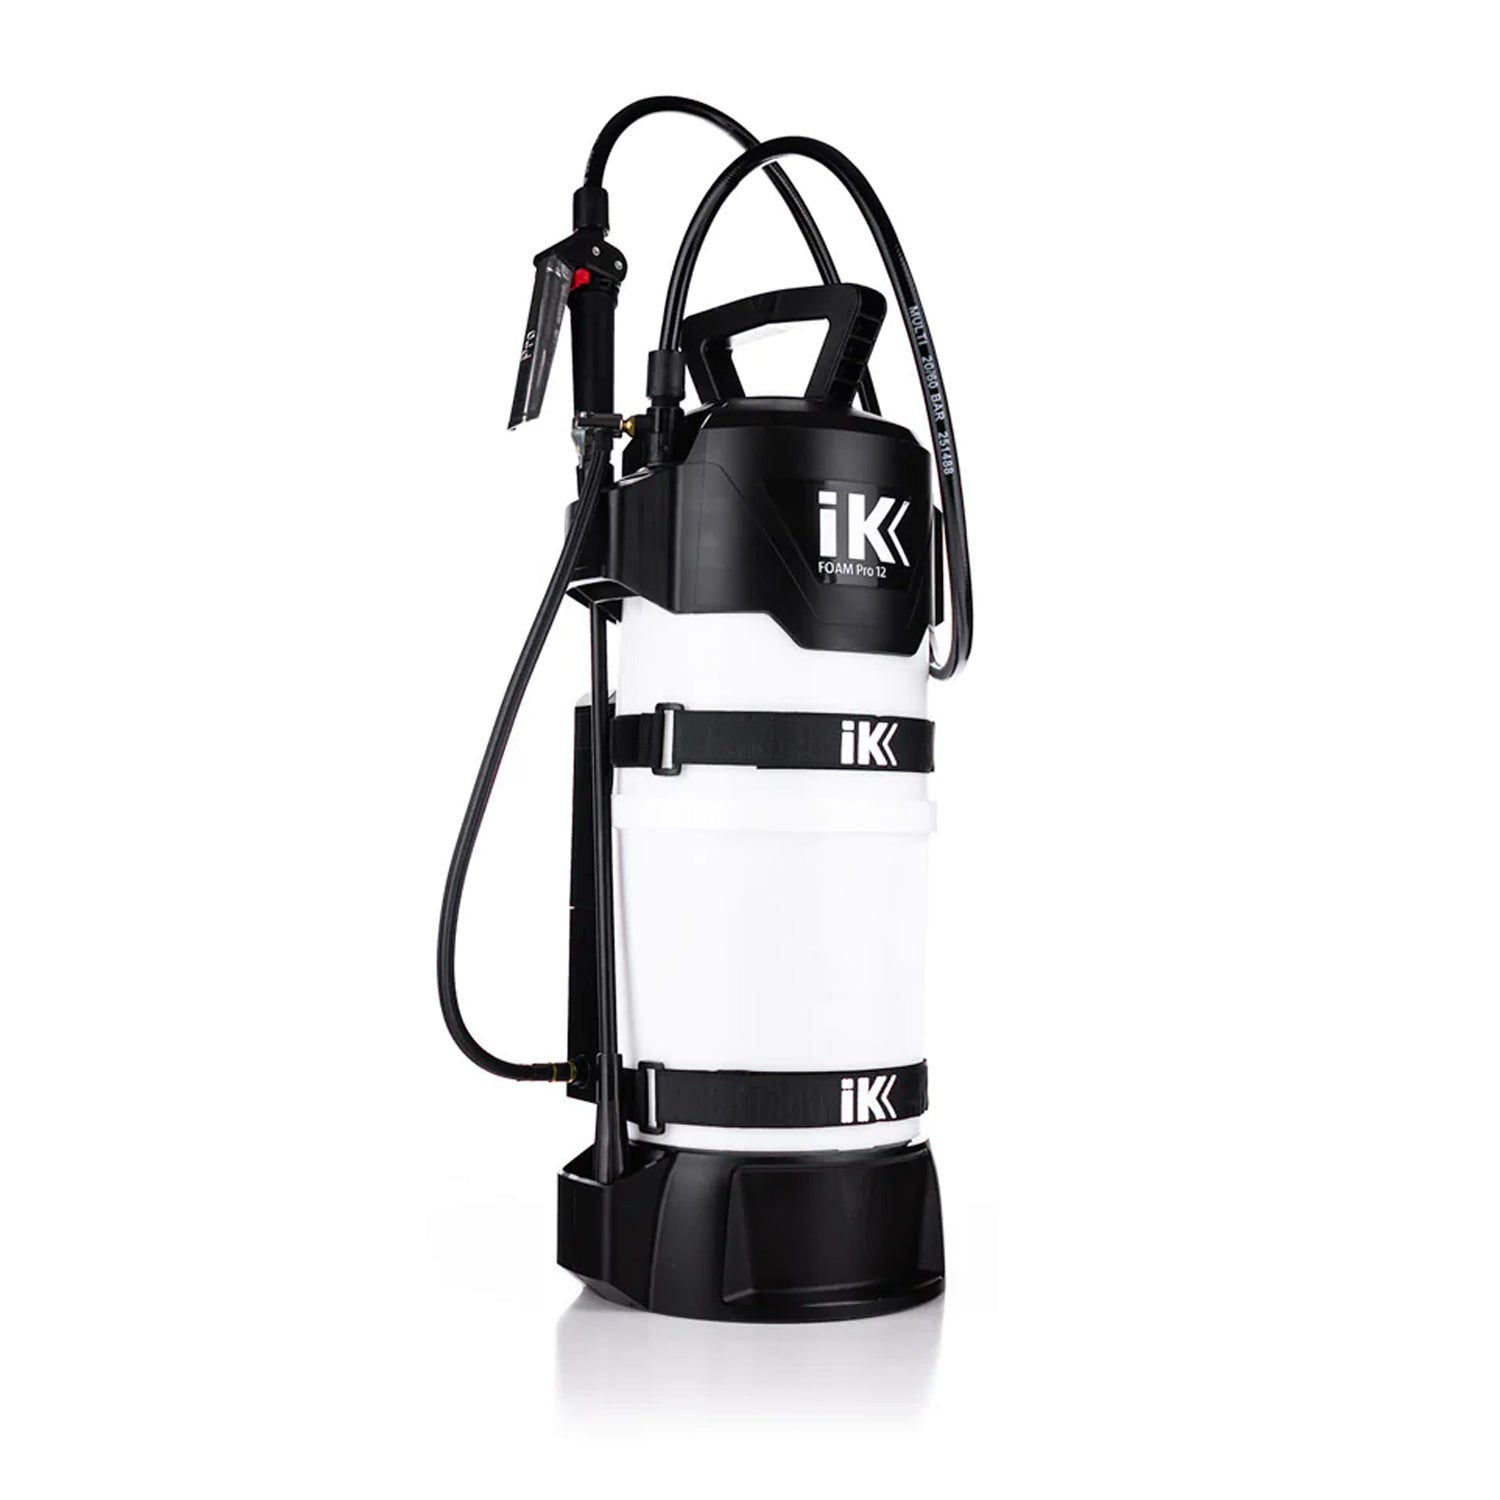 ik-e-foam-pro-12-electronic-pump-sprayer